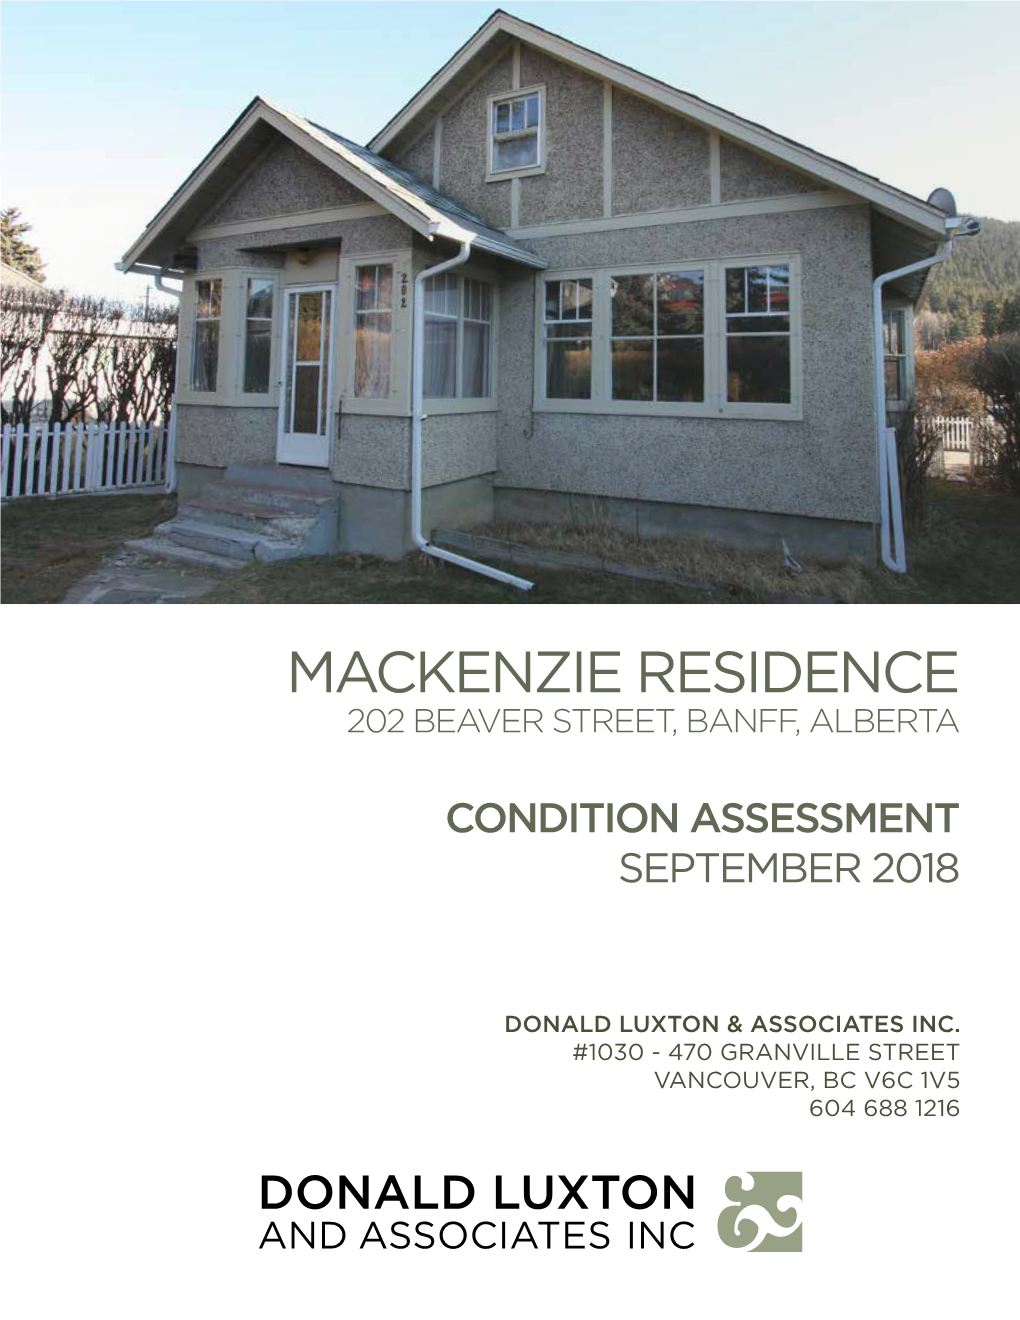 Mackenzie Residence Condition Assessment | September 2018